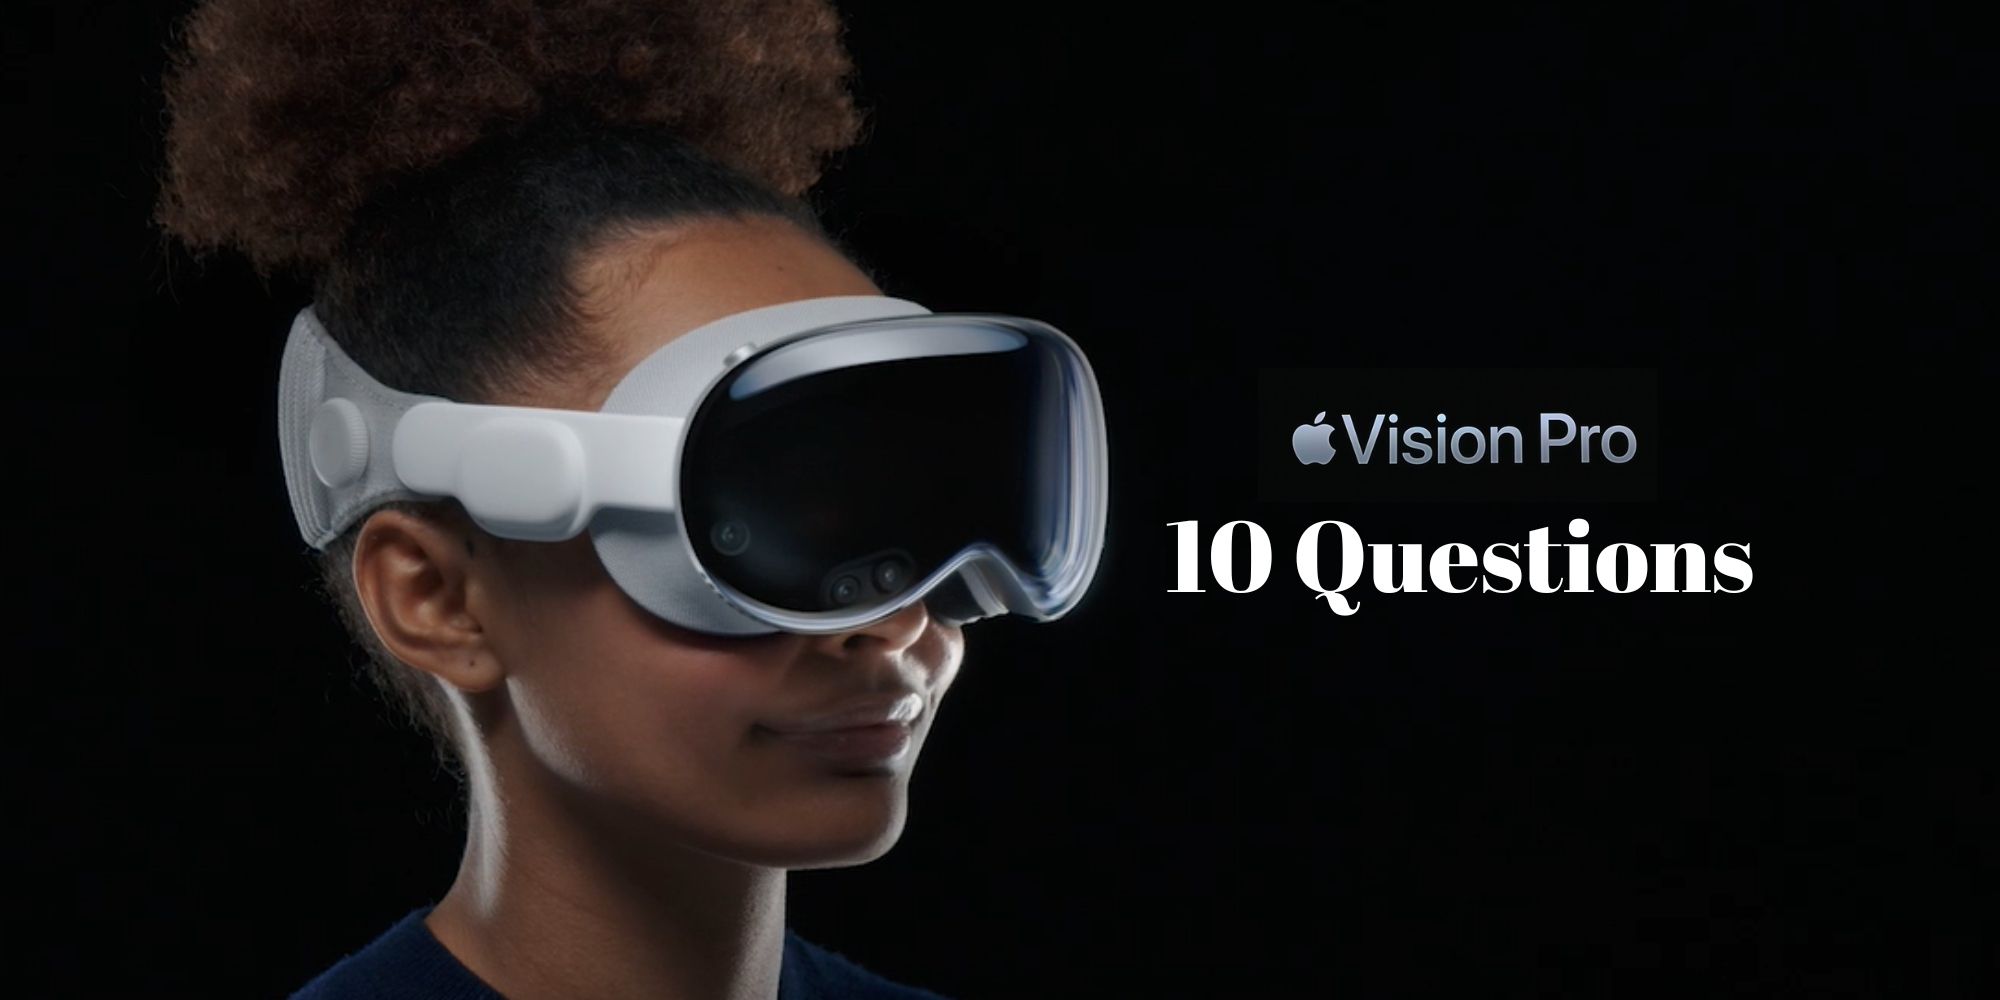 Diez preguntas que Apple debe responder antes de lanzar sus auriculares Vision Pro